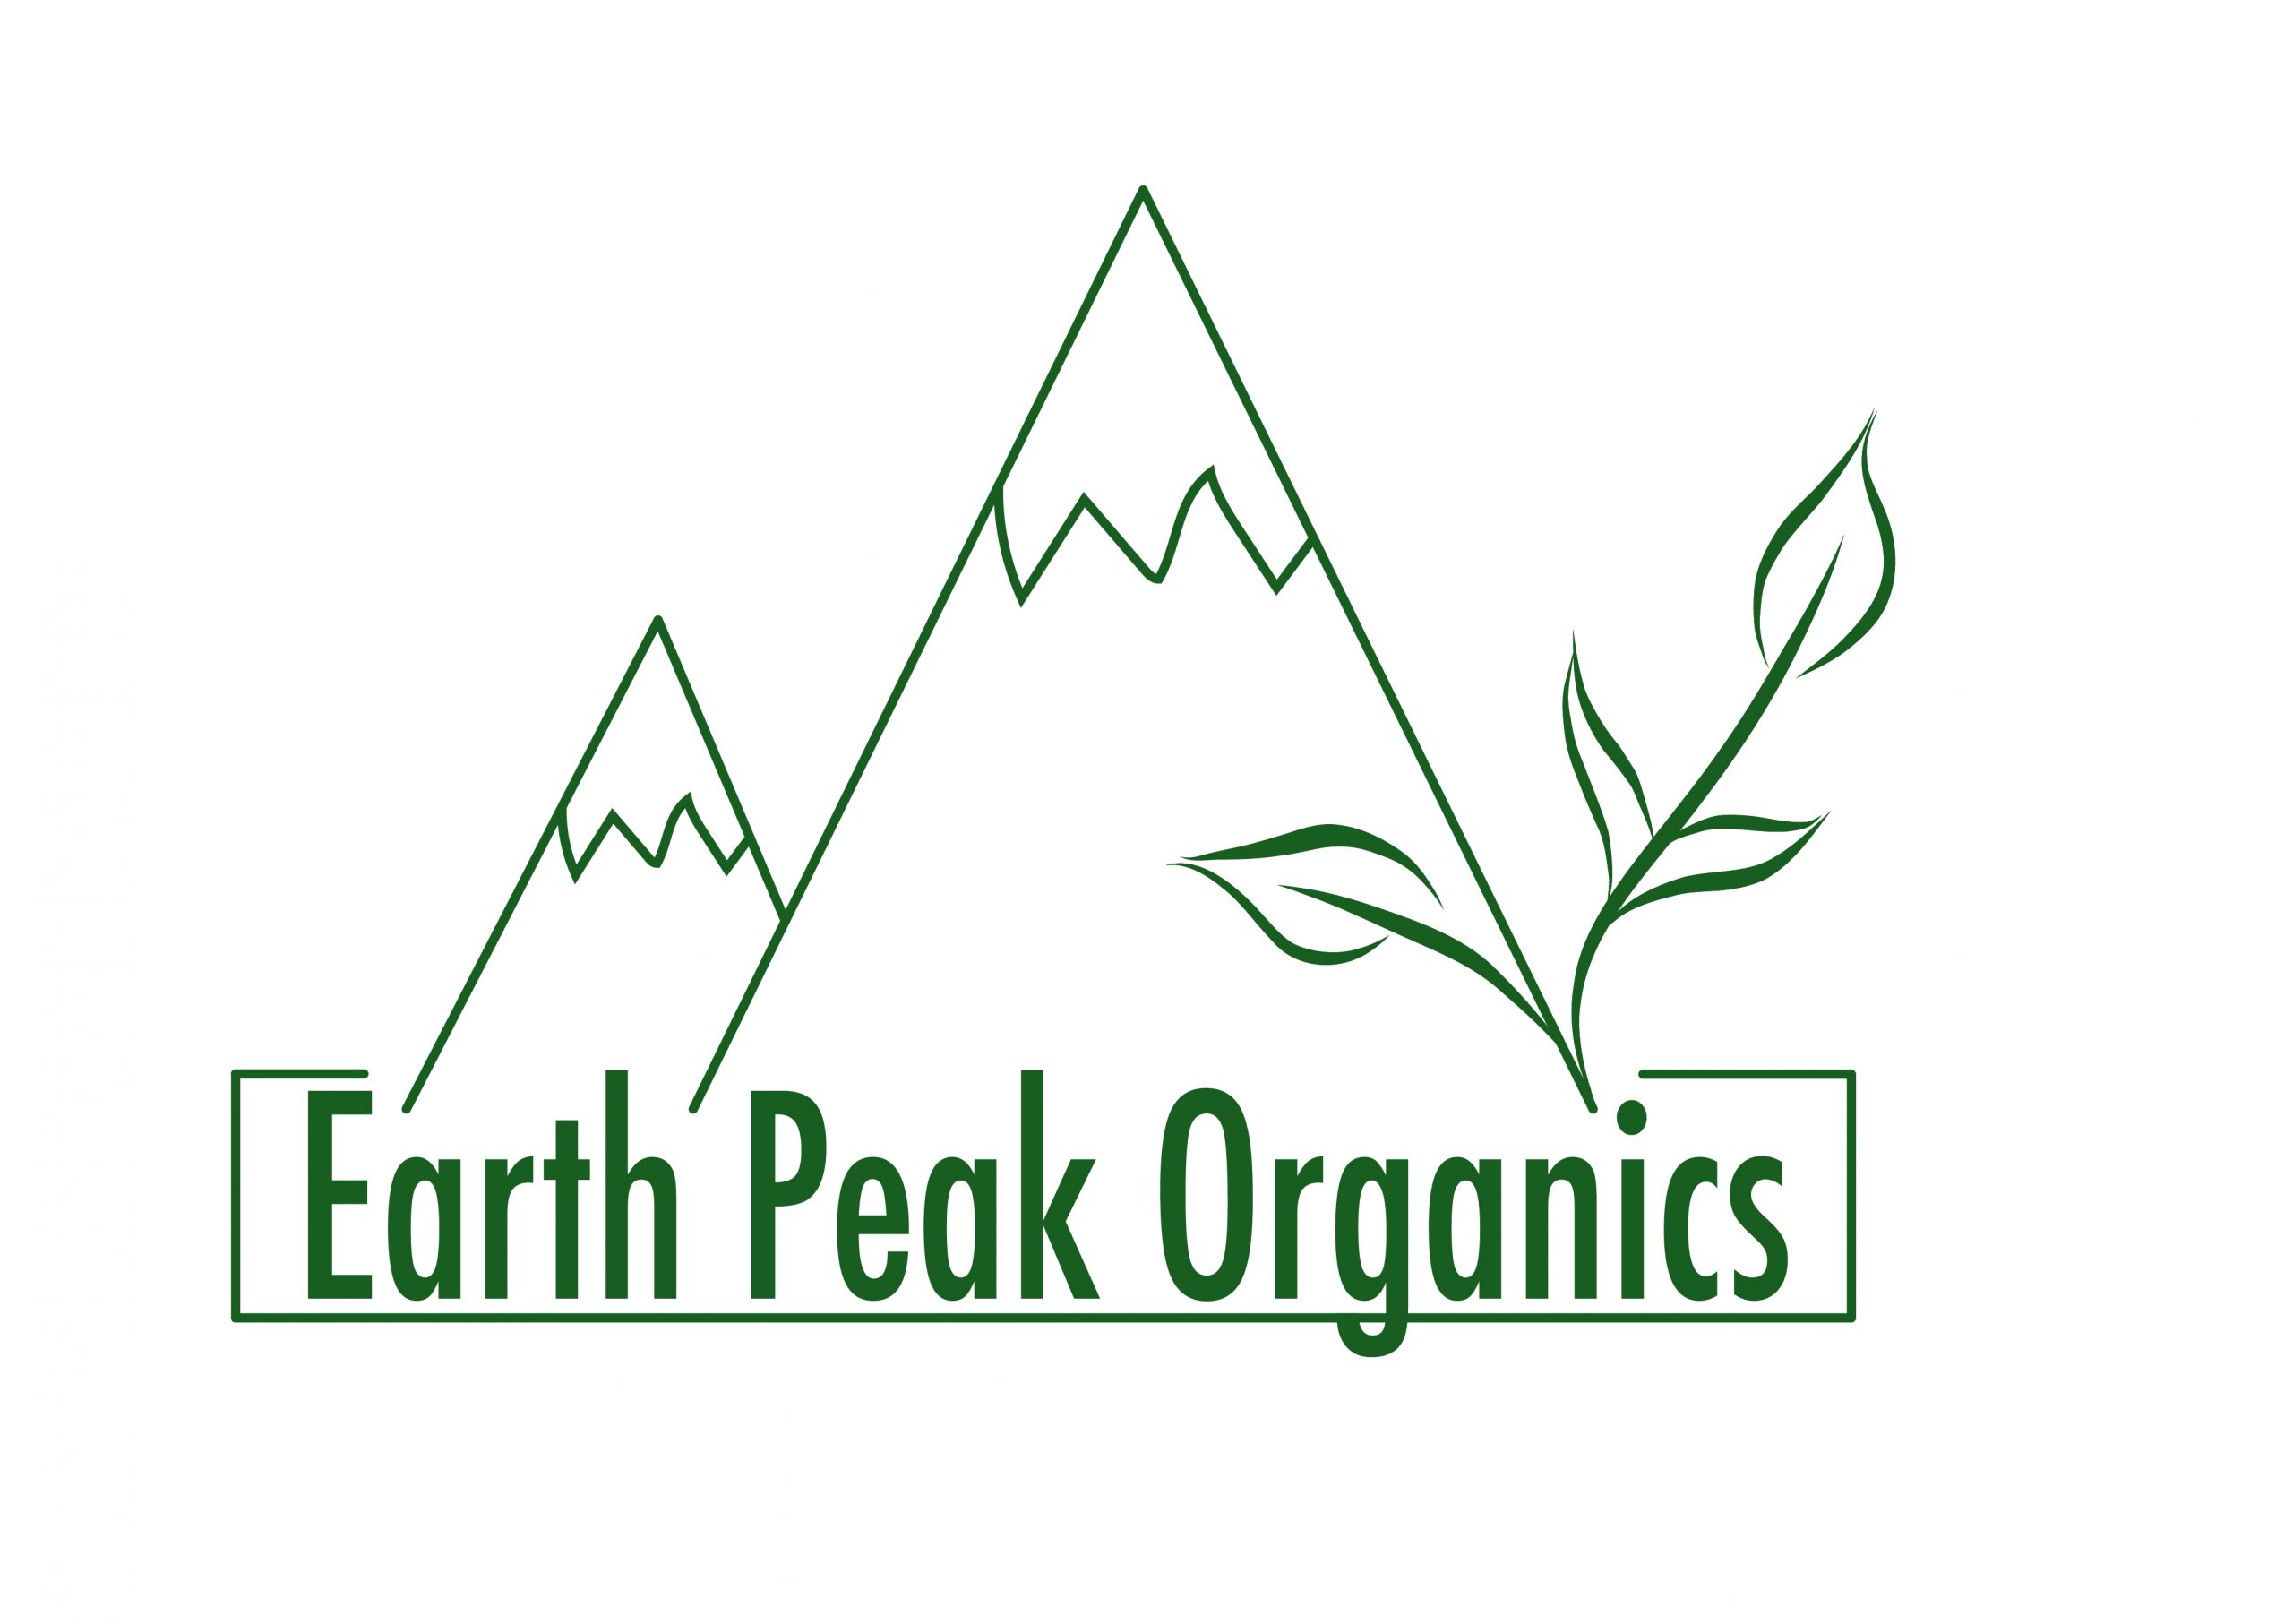 Earth Peak Organics